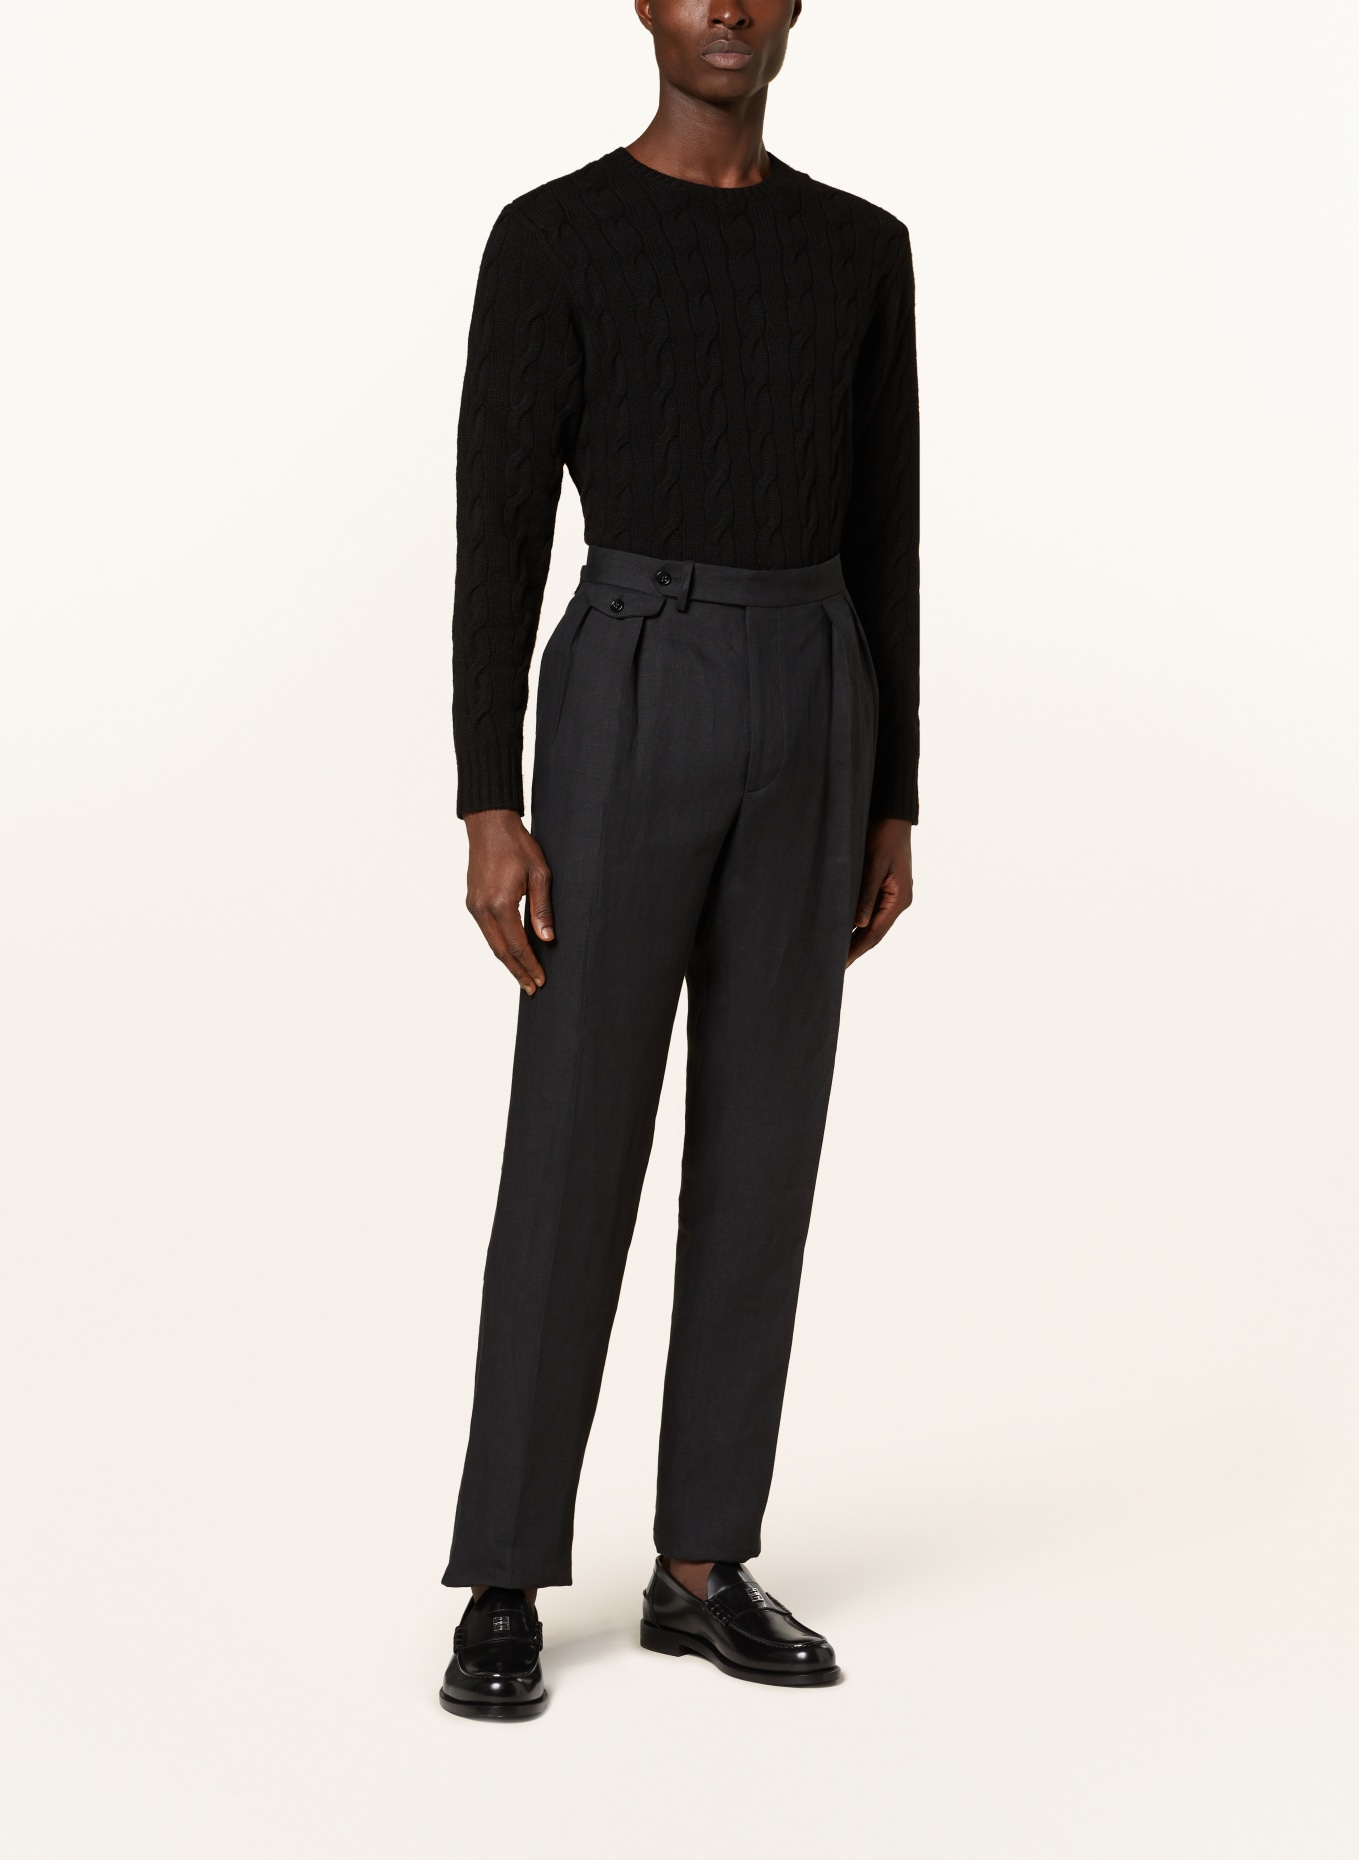 RALPH LAUREN PURPLE LABEL Cashmere sweater, Color: BLACK (Image 2)